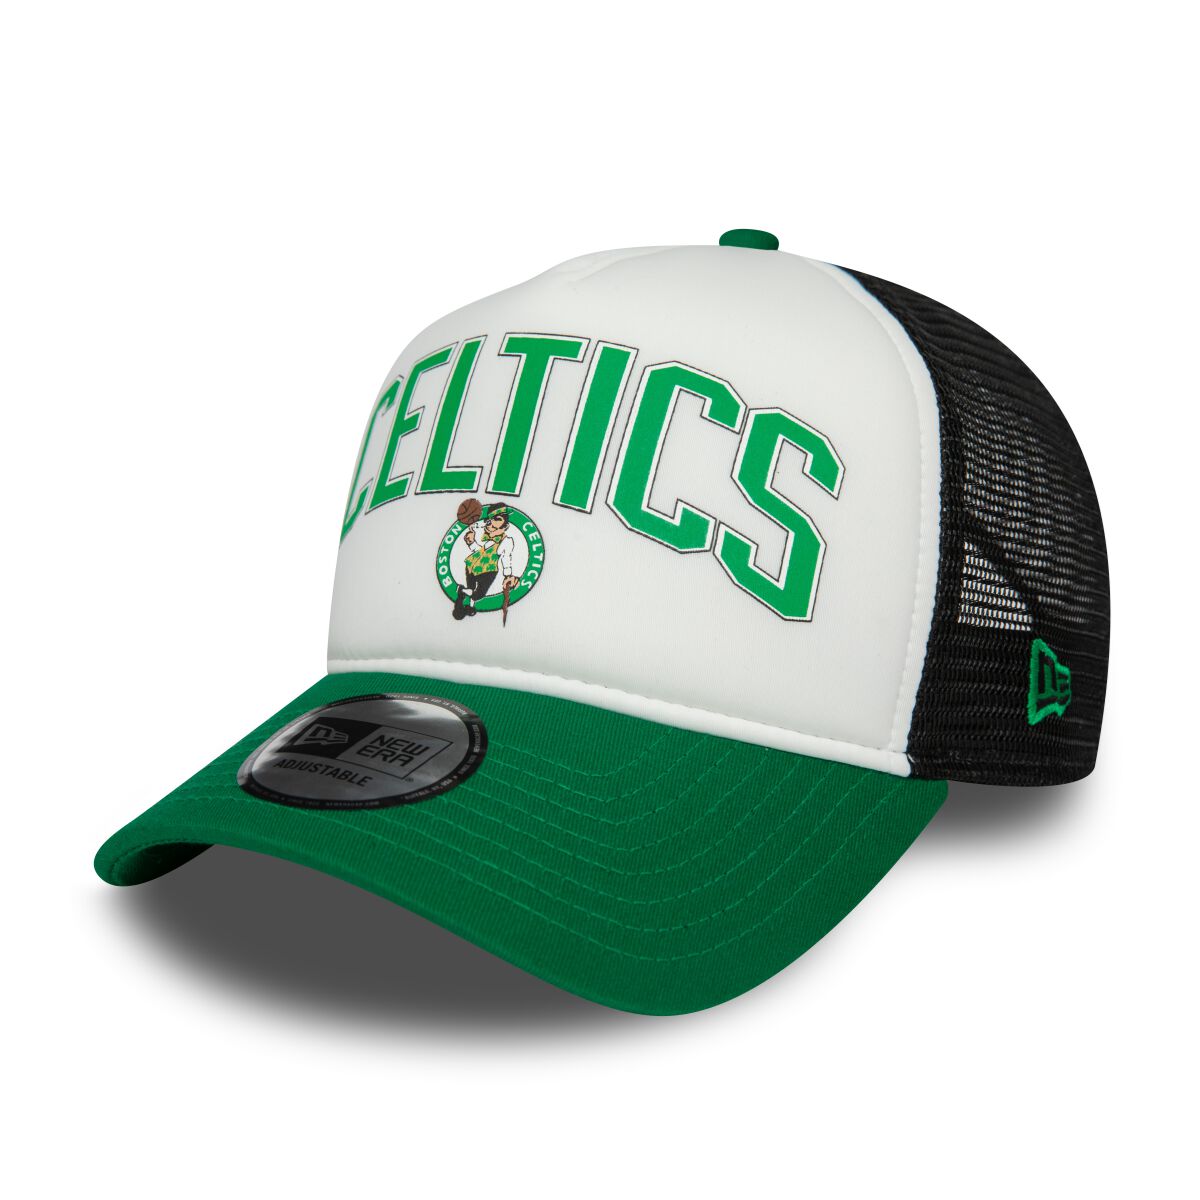 New Era - NBA Cap - Retro Trucker 9FORTY - Boston Celtics - multicolor